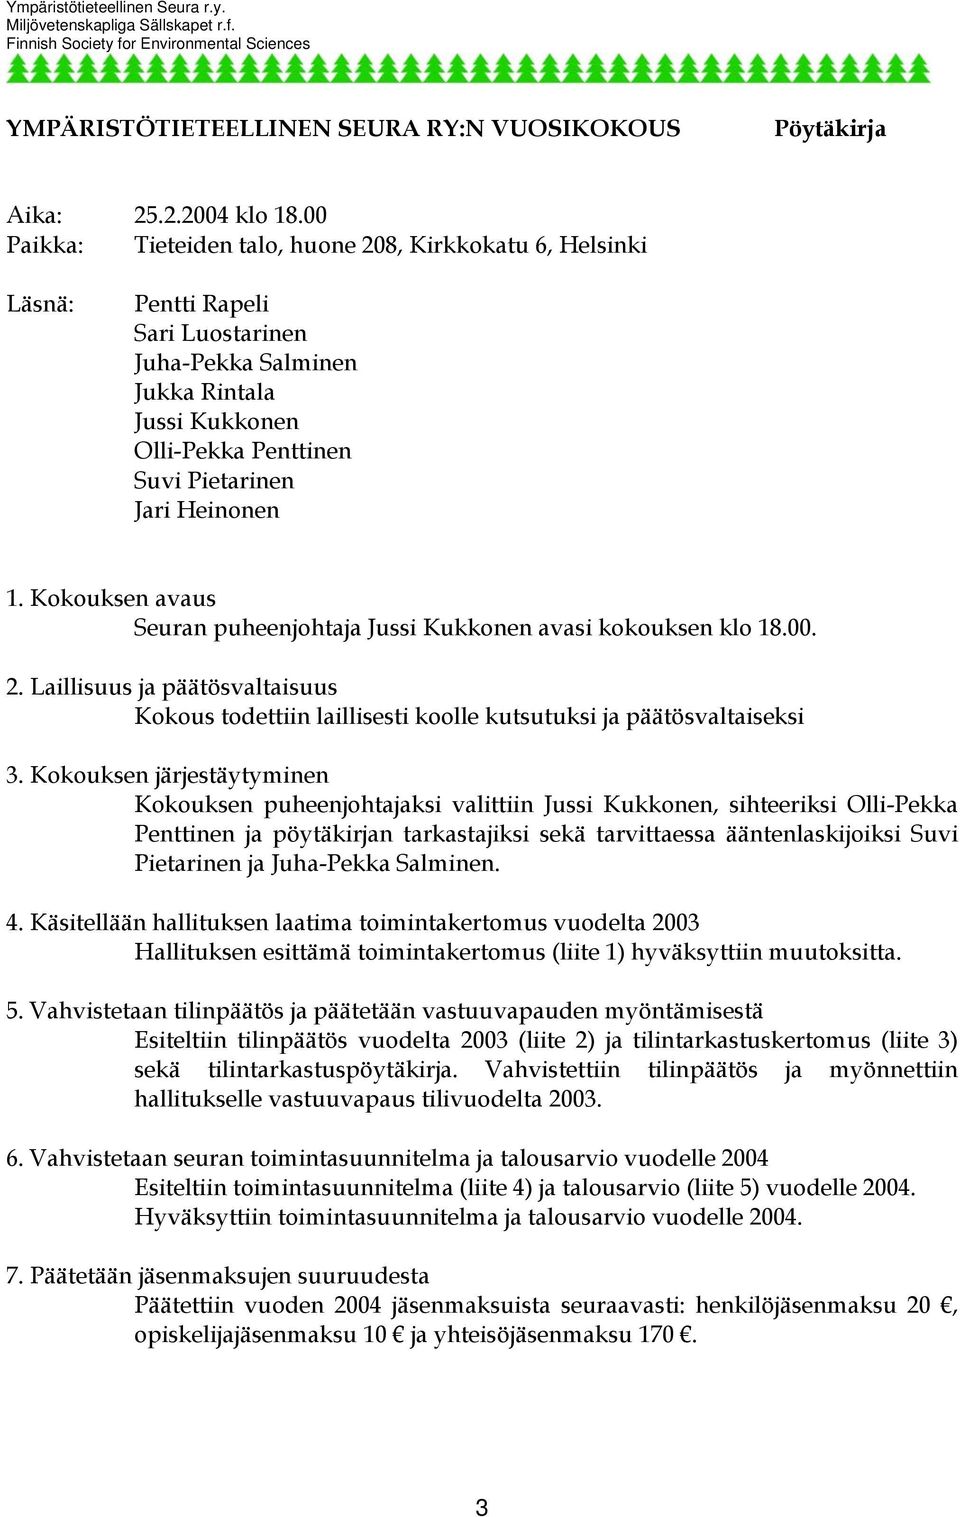 1. Kokouksen avaus Seuran puheenjohtaja Jussi Kukkonen avasi kokouksen klo 18.00. 2. Laillisuus ja päätösvaltaisuus Kokous todettiin laillisesti koolle kutsutuksi ja päätösvaltaiseksi 3.